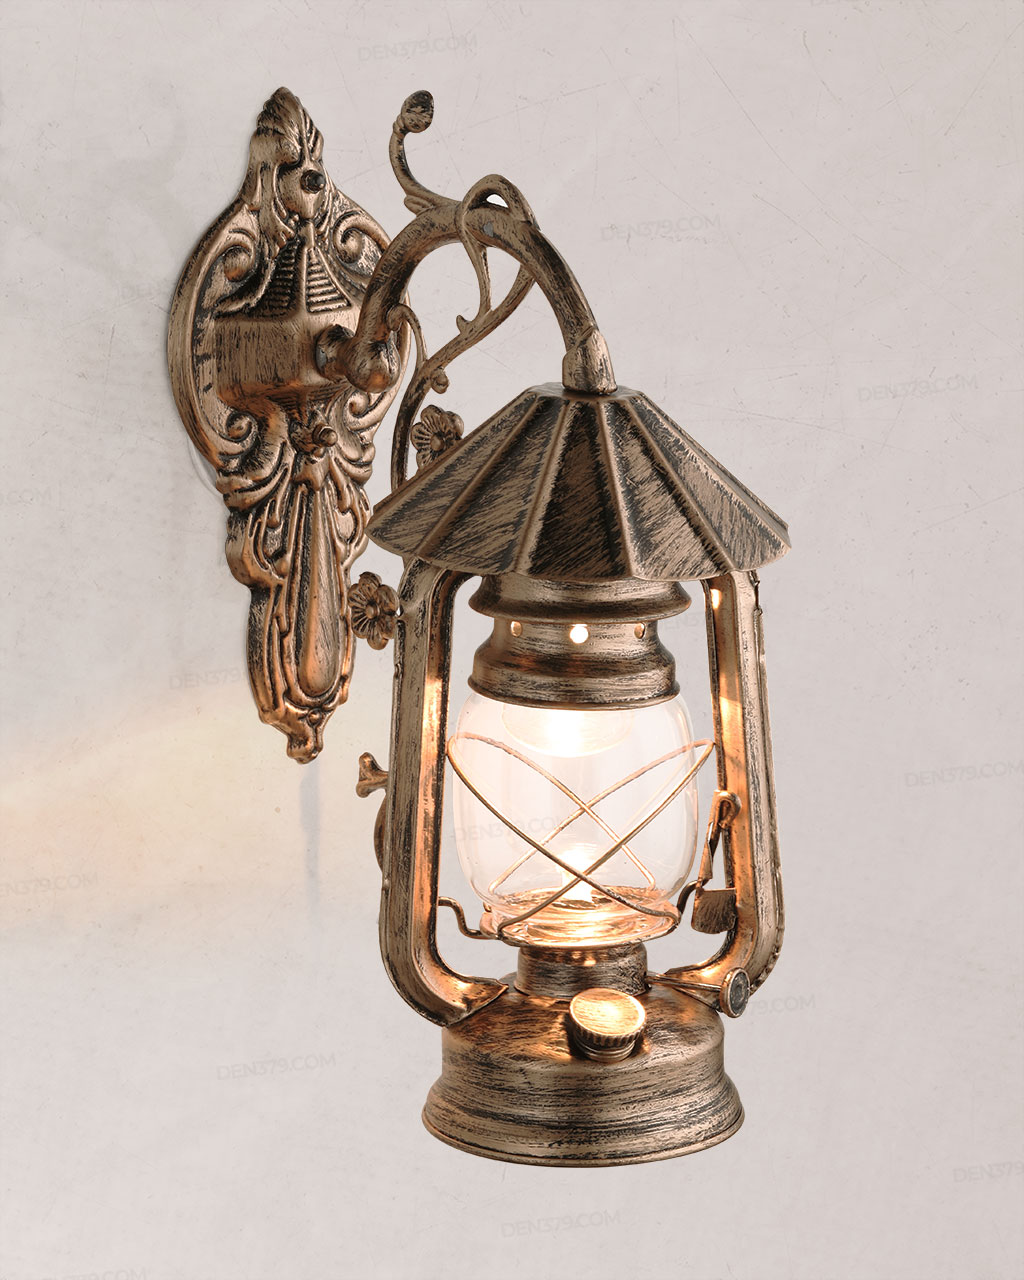 Mẫu đèn trang trí cổ điển làm từ chất liệu đồng cao cấp